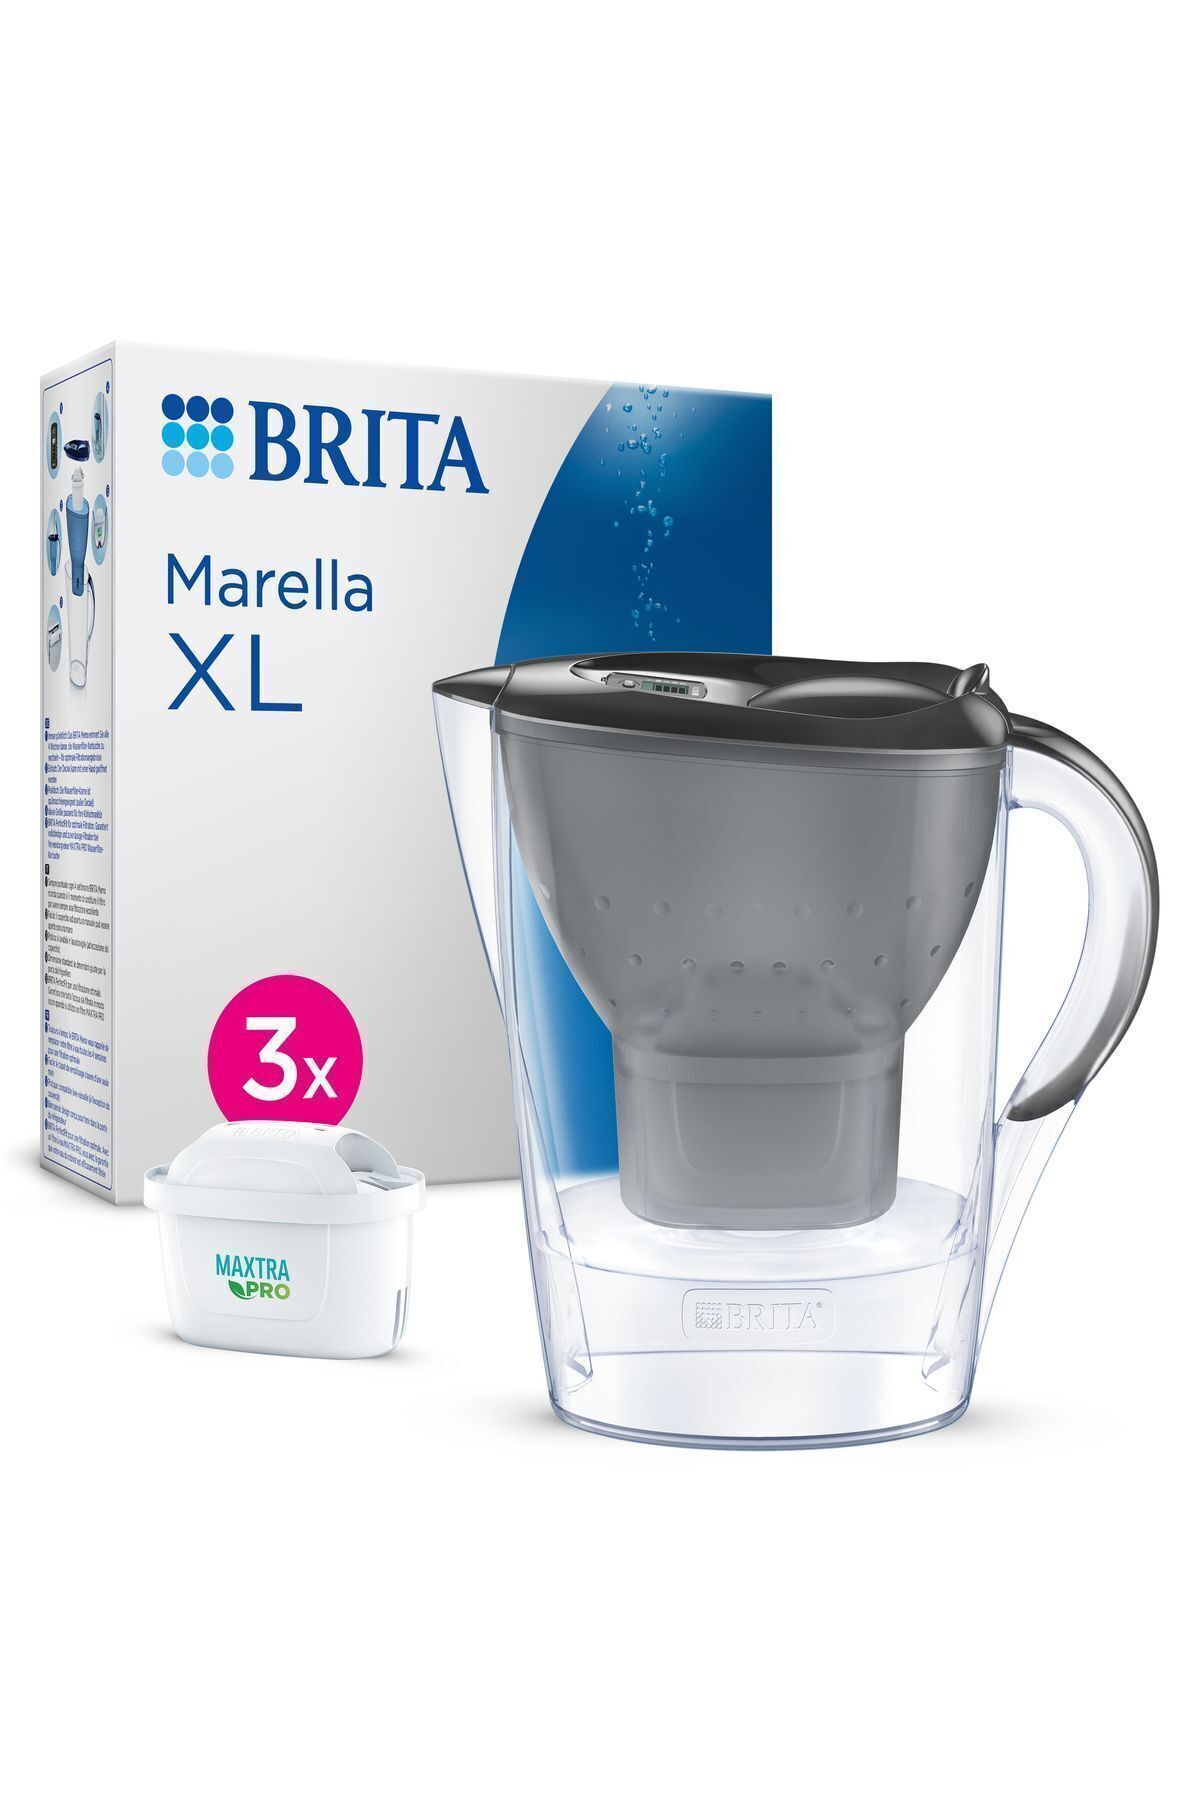 Brita Marella XL 3x MAXTRA PRO ALL-IN-1 Filtreli Su Arıtma Sürahisi – Grafit (3,5 L)